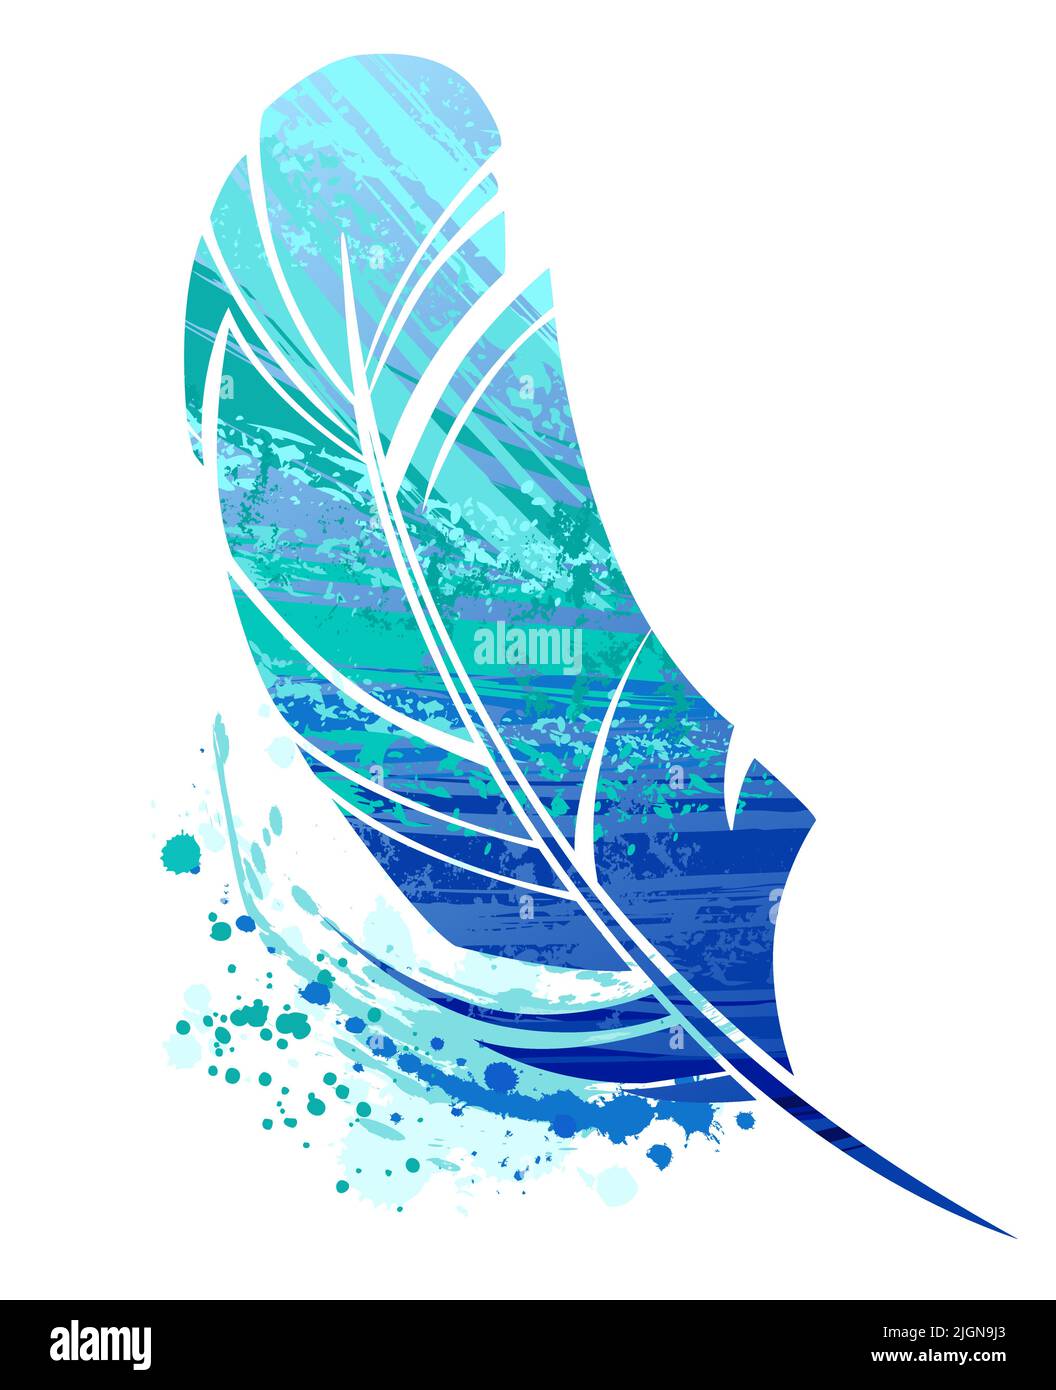 Piccola piuma d'uccello dipinta con grandi tratti di vernice acrilica blu e turchese su sfondo bianco. Disegno sloppy Illustrazione Vettoriale